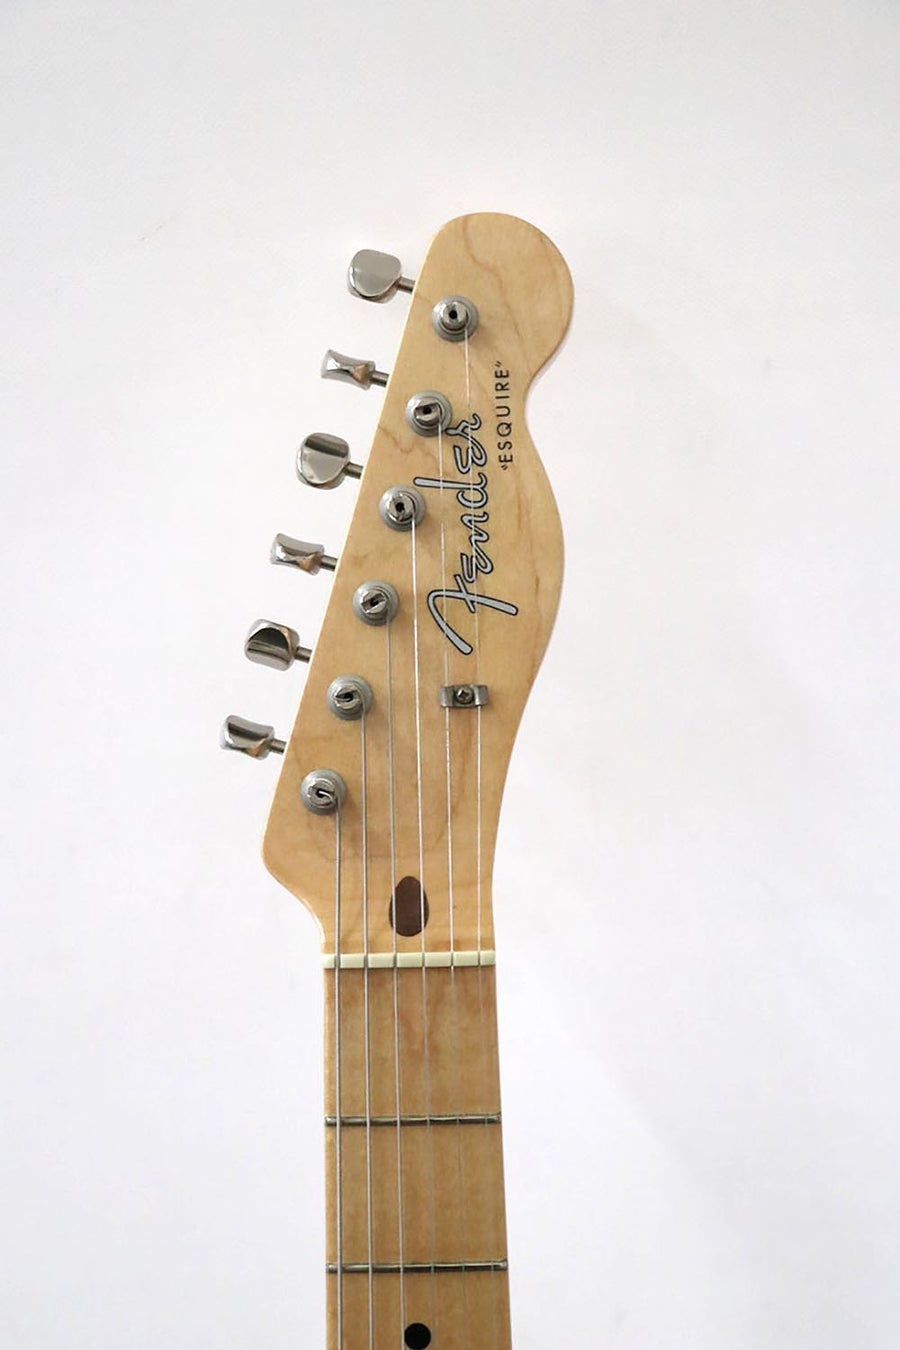 Fender Custom Shop 1959 Esquire 2006